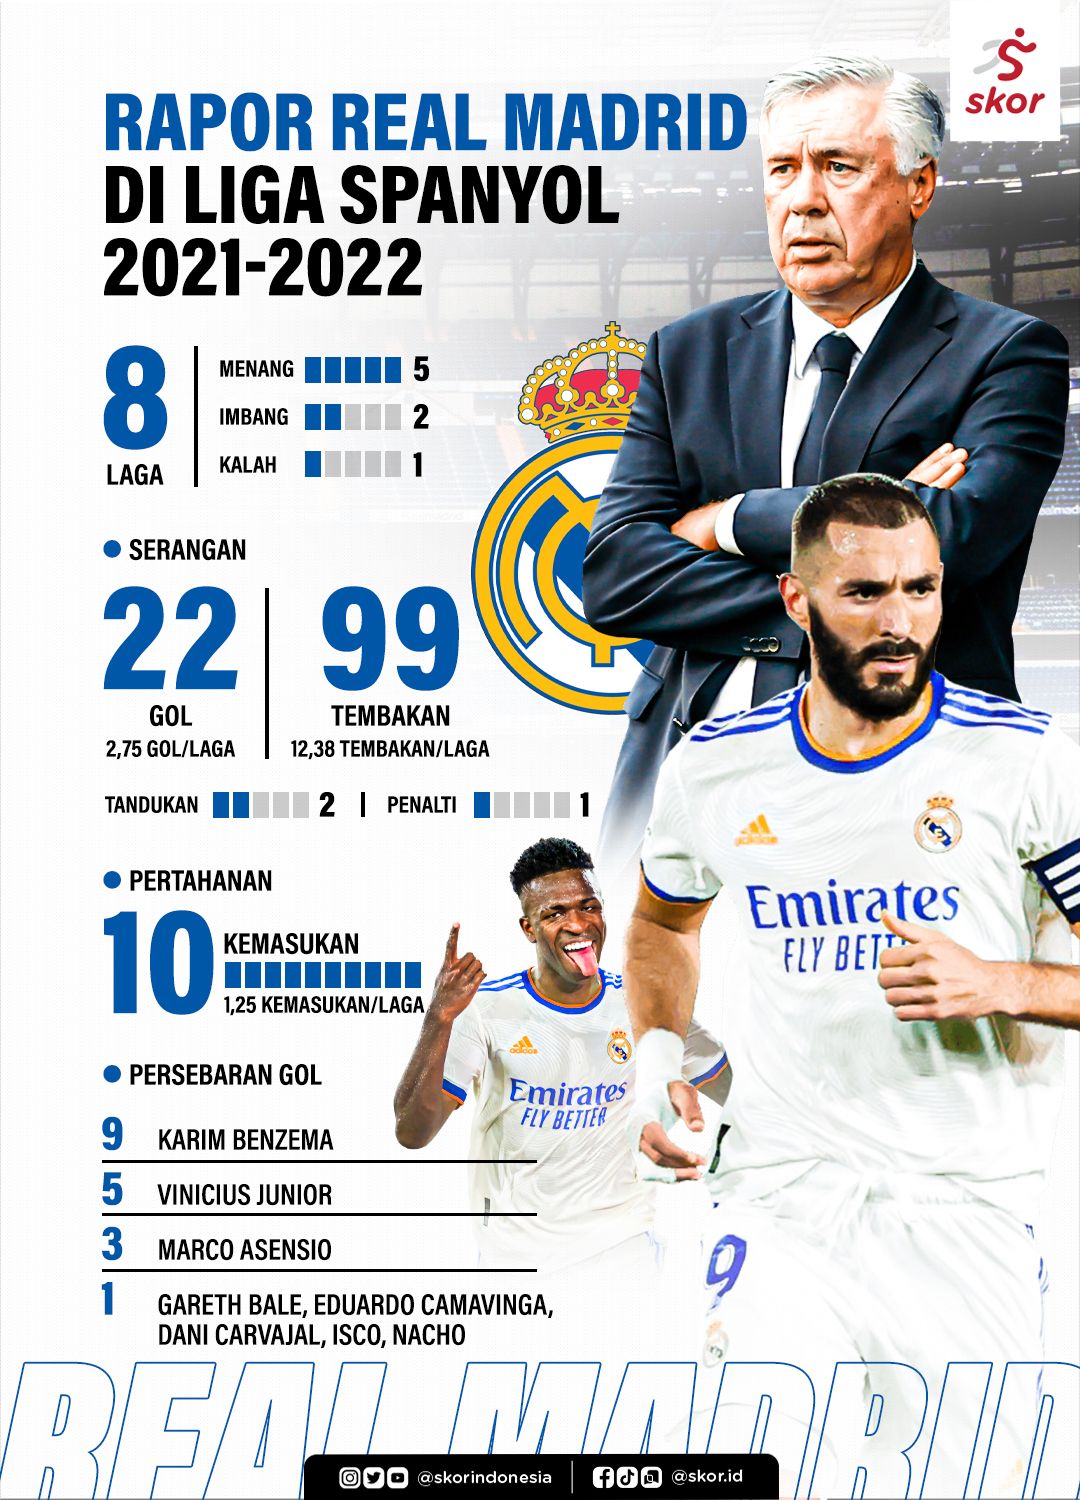 Rapor Real Madrid di Liga Spanyol 2021-2022